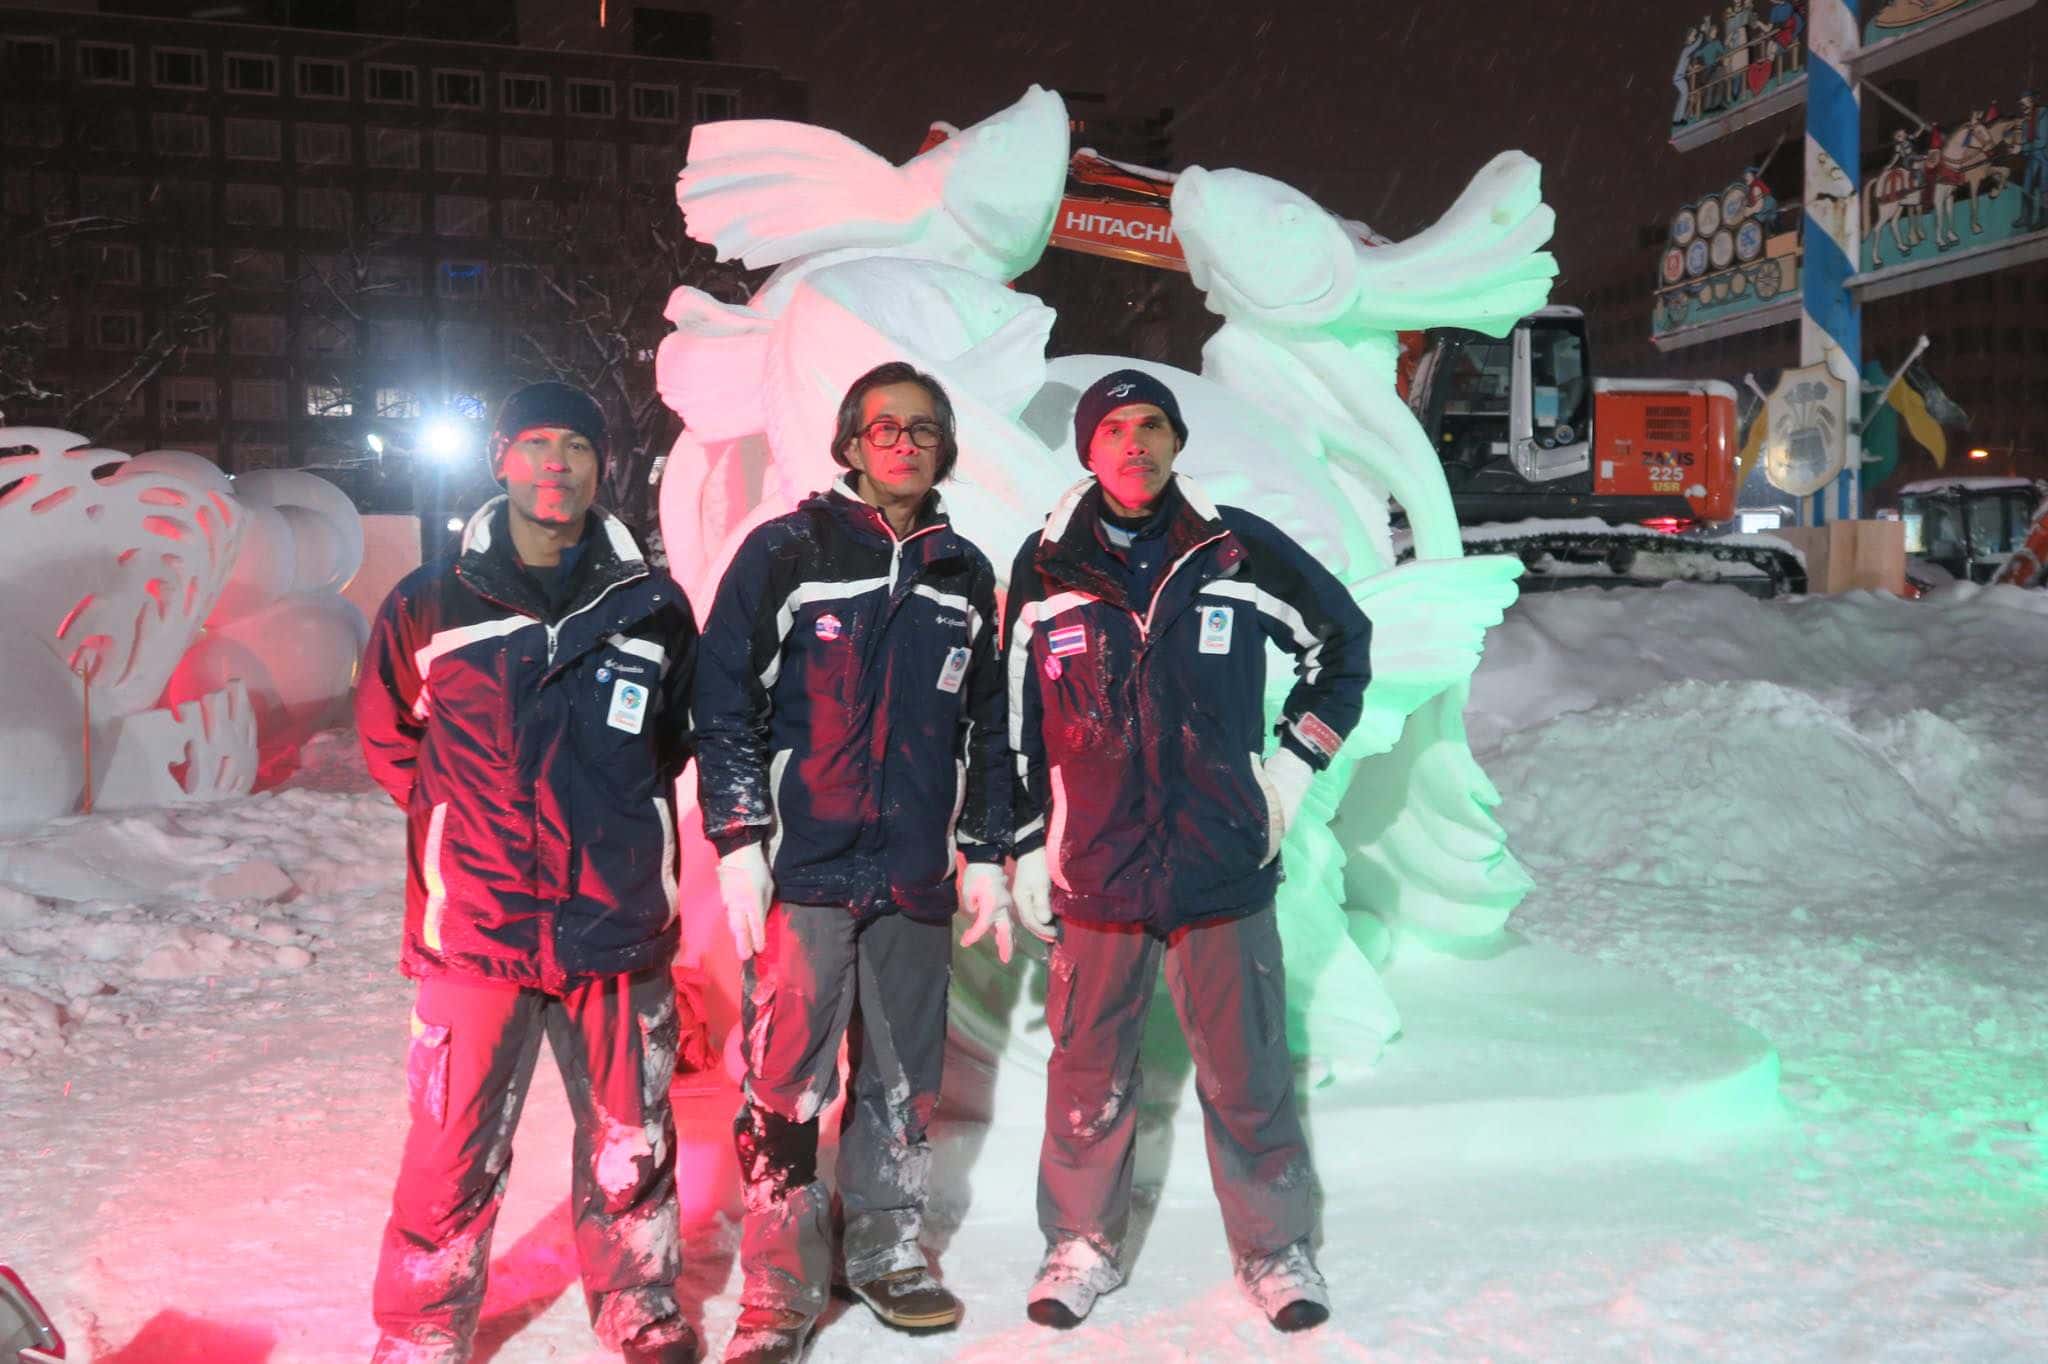 ไทยคว้าแชมป์การแข่งขัน แกะสลักหิมะ ที่กรุงซัปโปโรปี 2019